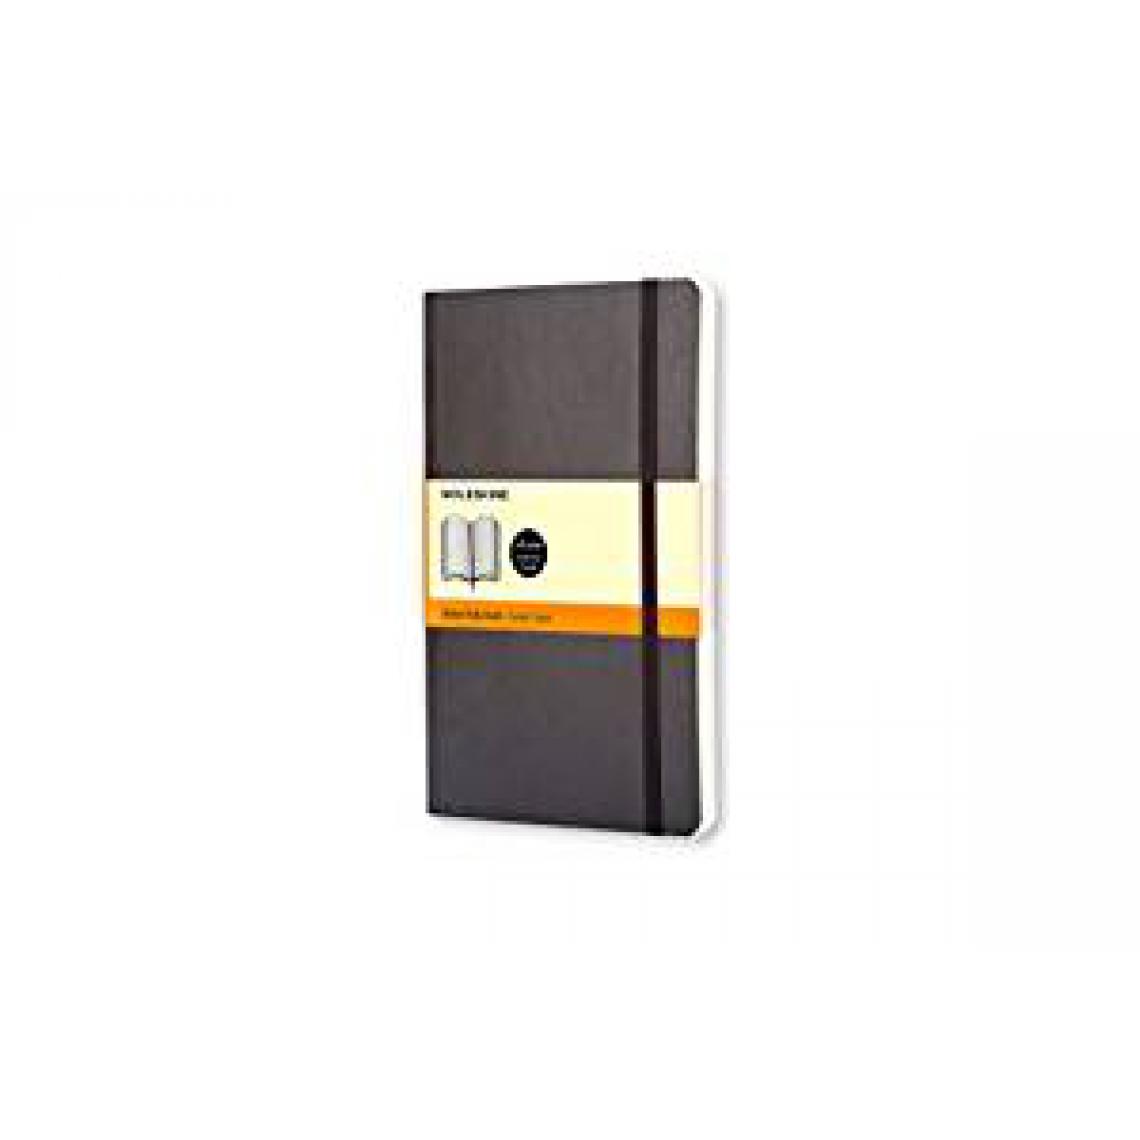 Moleskine - Moleskine carnet Format de poche couverture souple noire 9 x 14 cm - Dessin et peinture